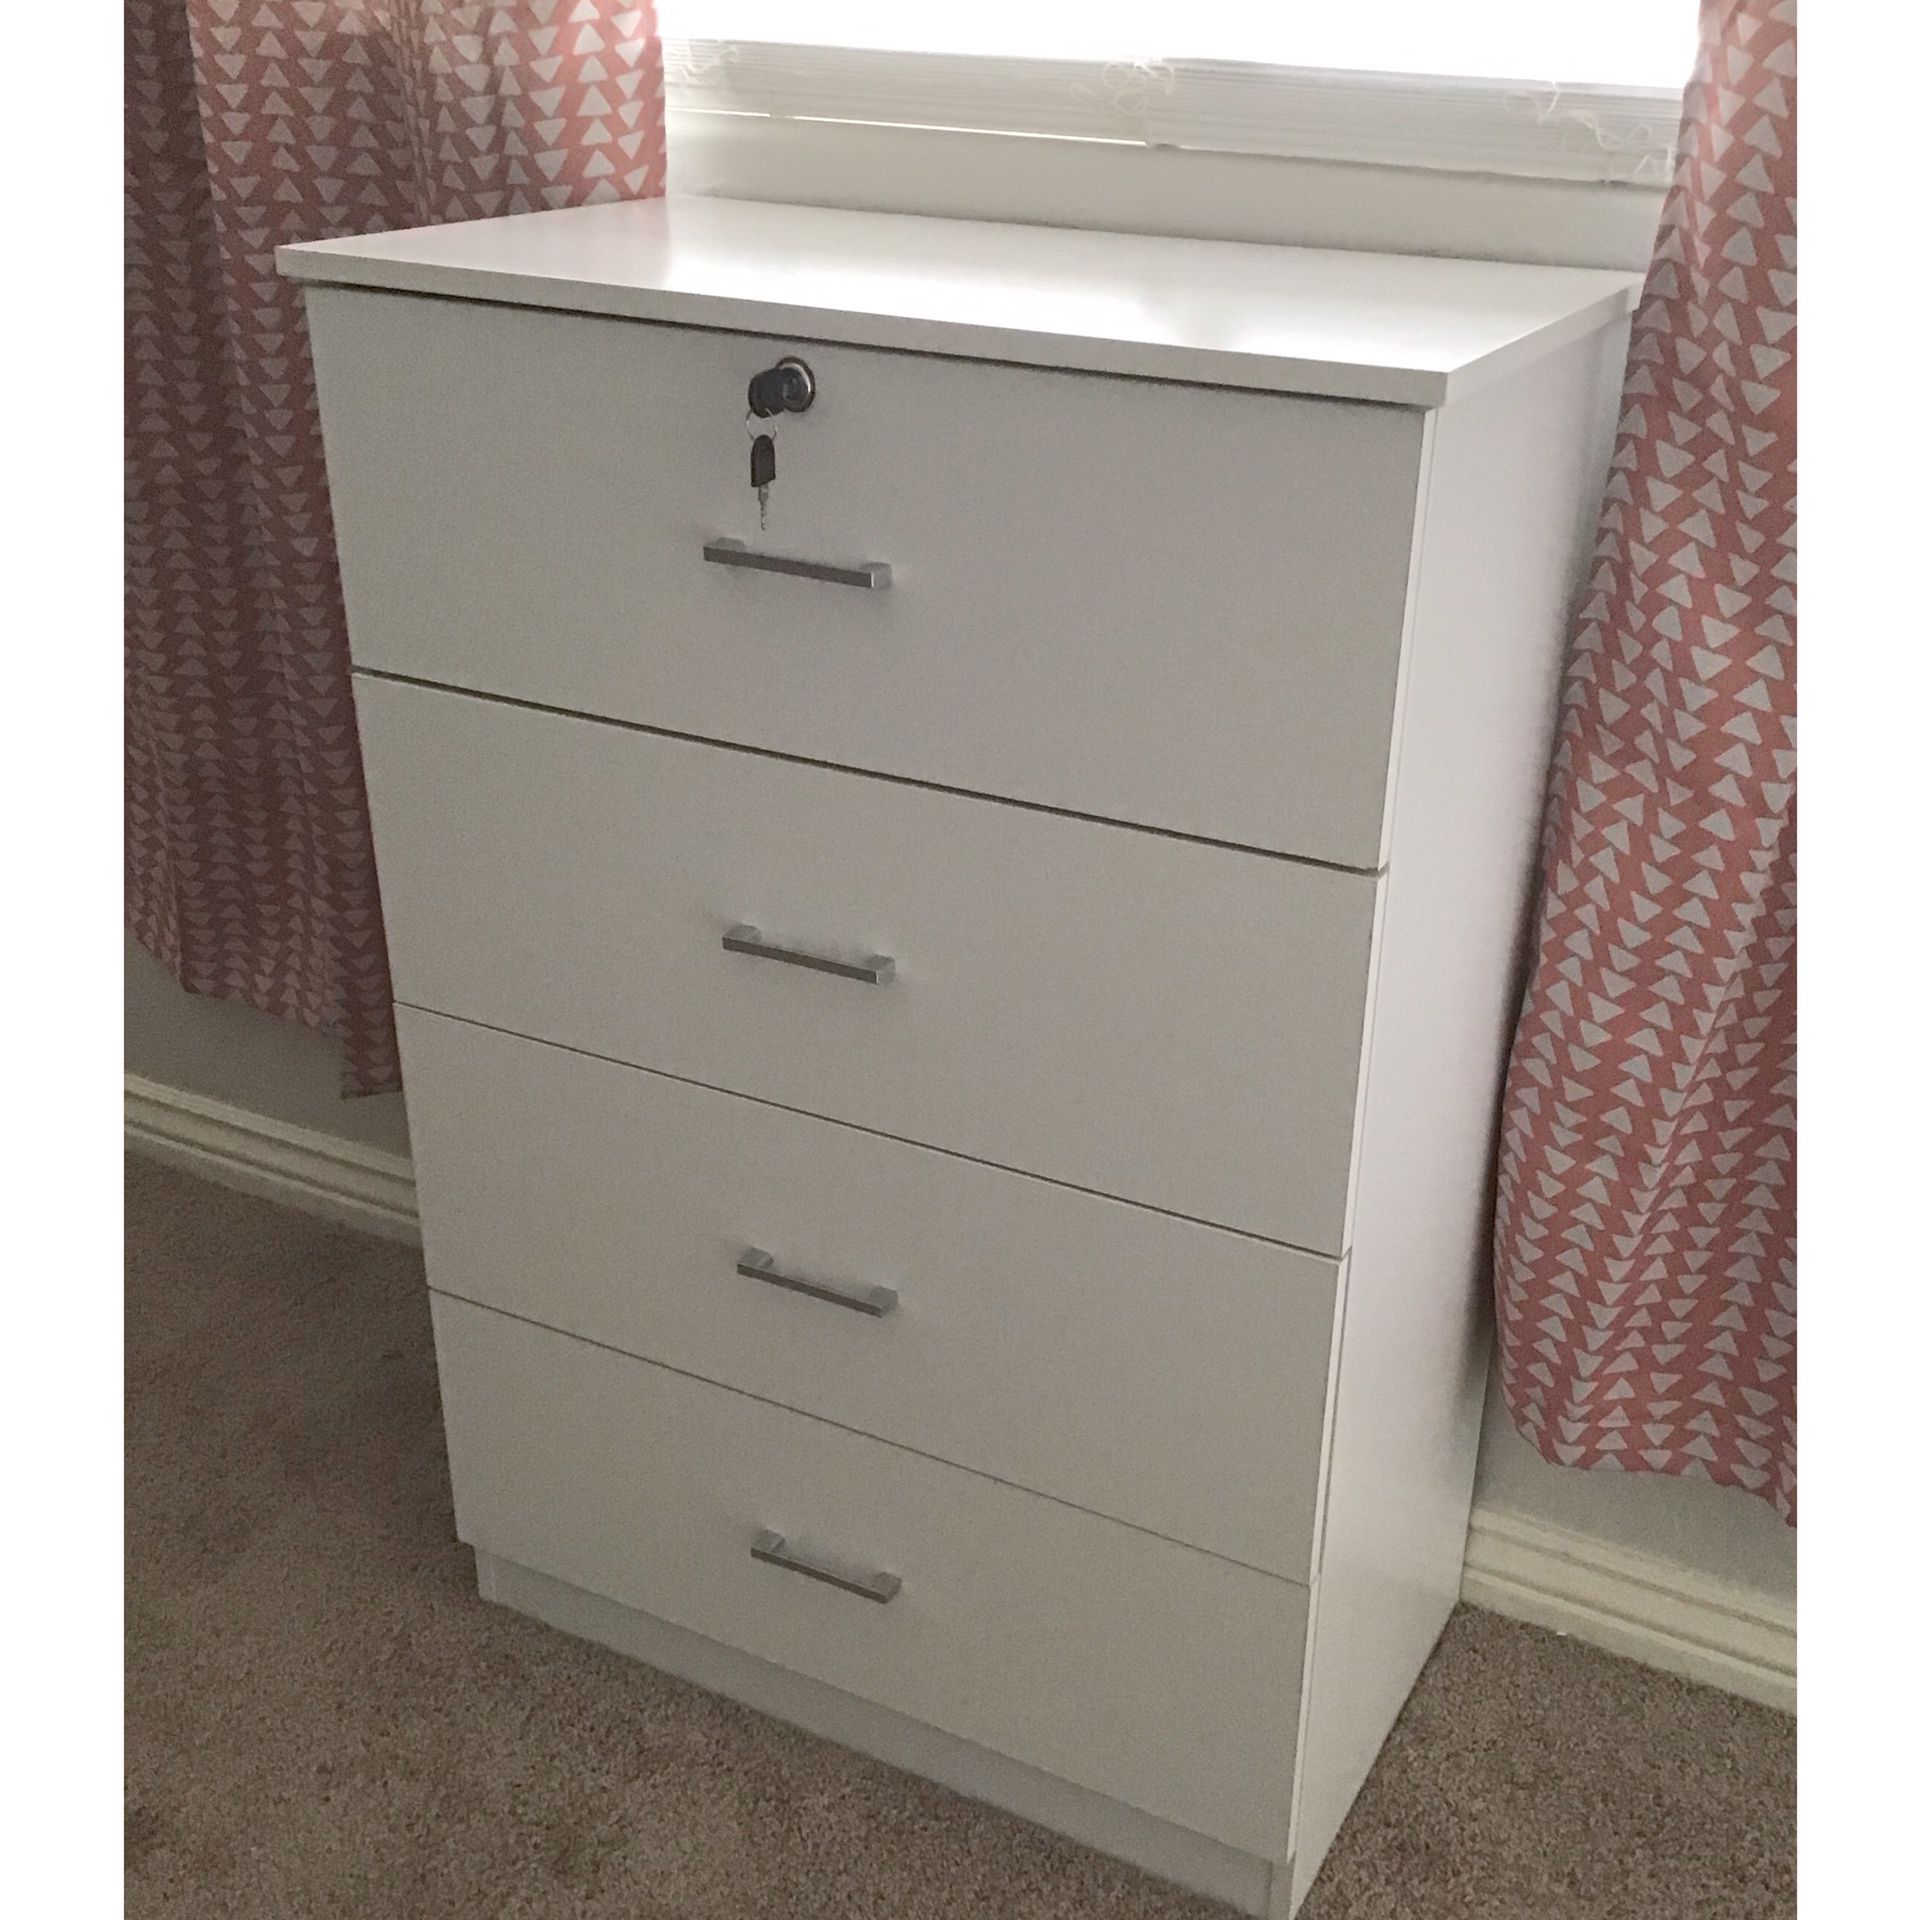 New!! Dresser, chest, wardrobe, 4 drawer dresser, storage unit, organizer, bedroom furniture , white, dresser w lock